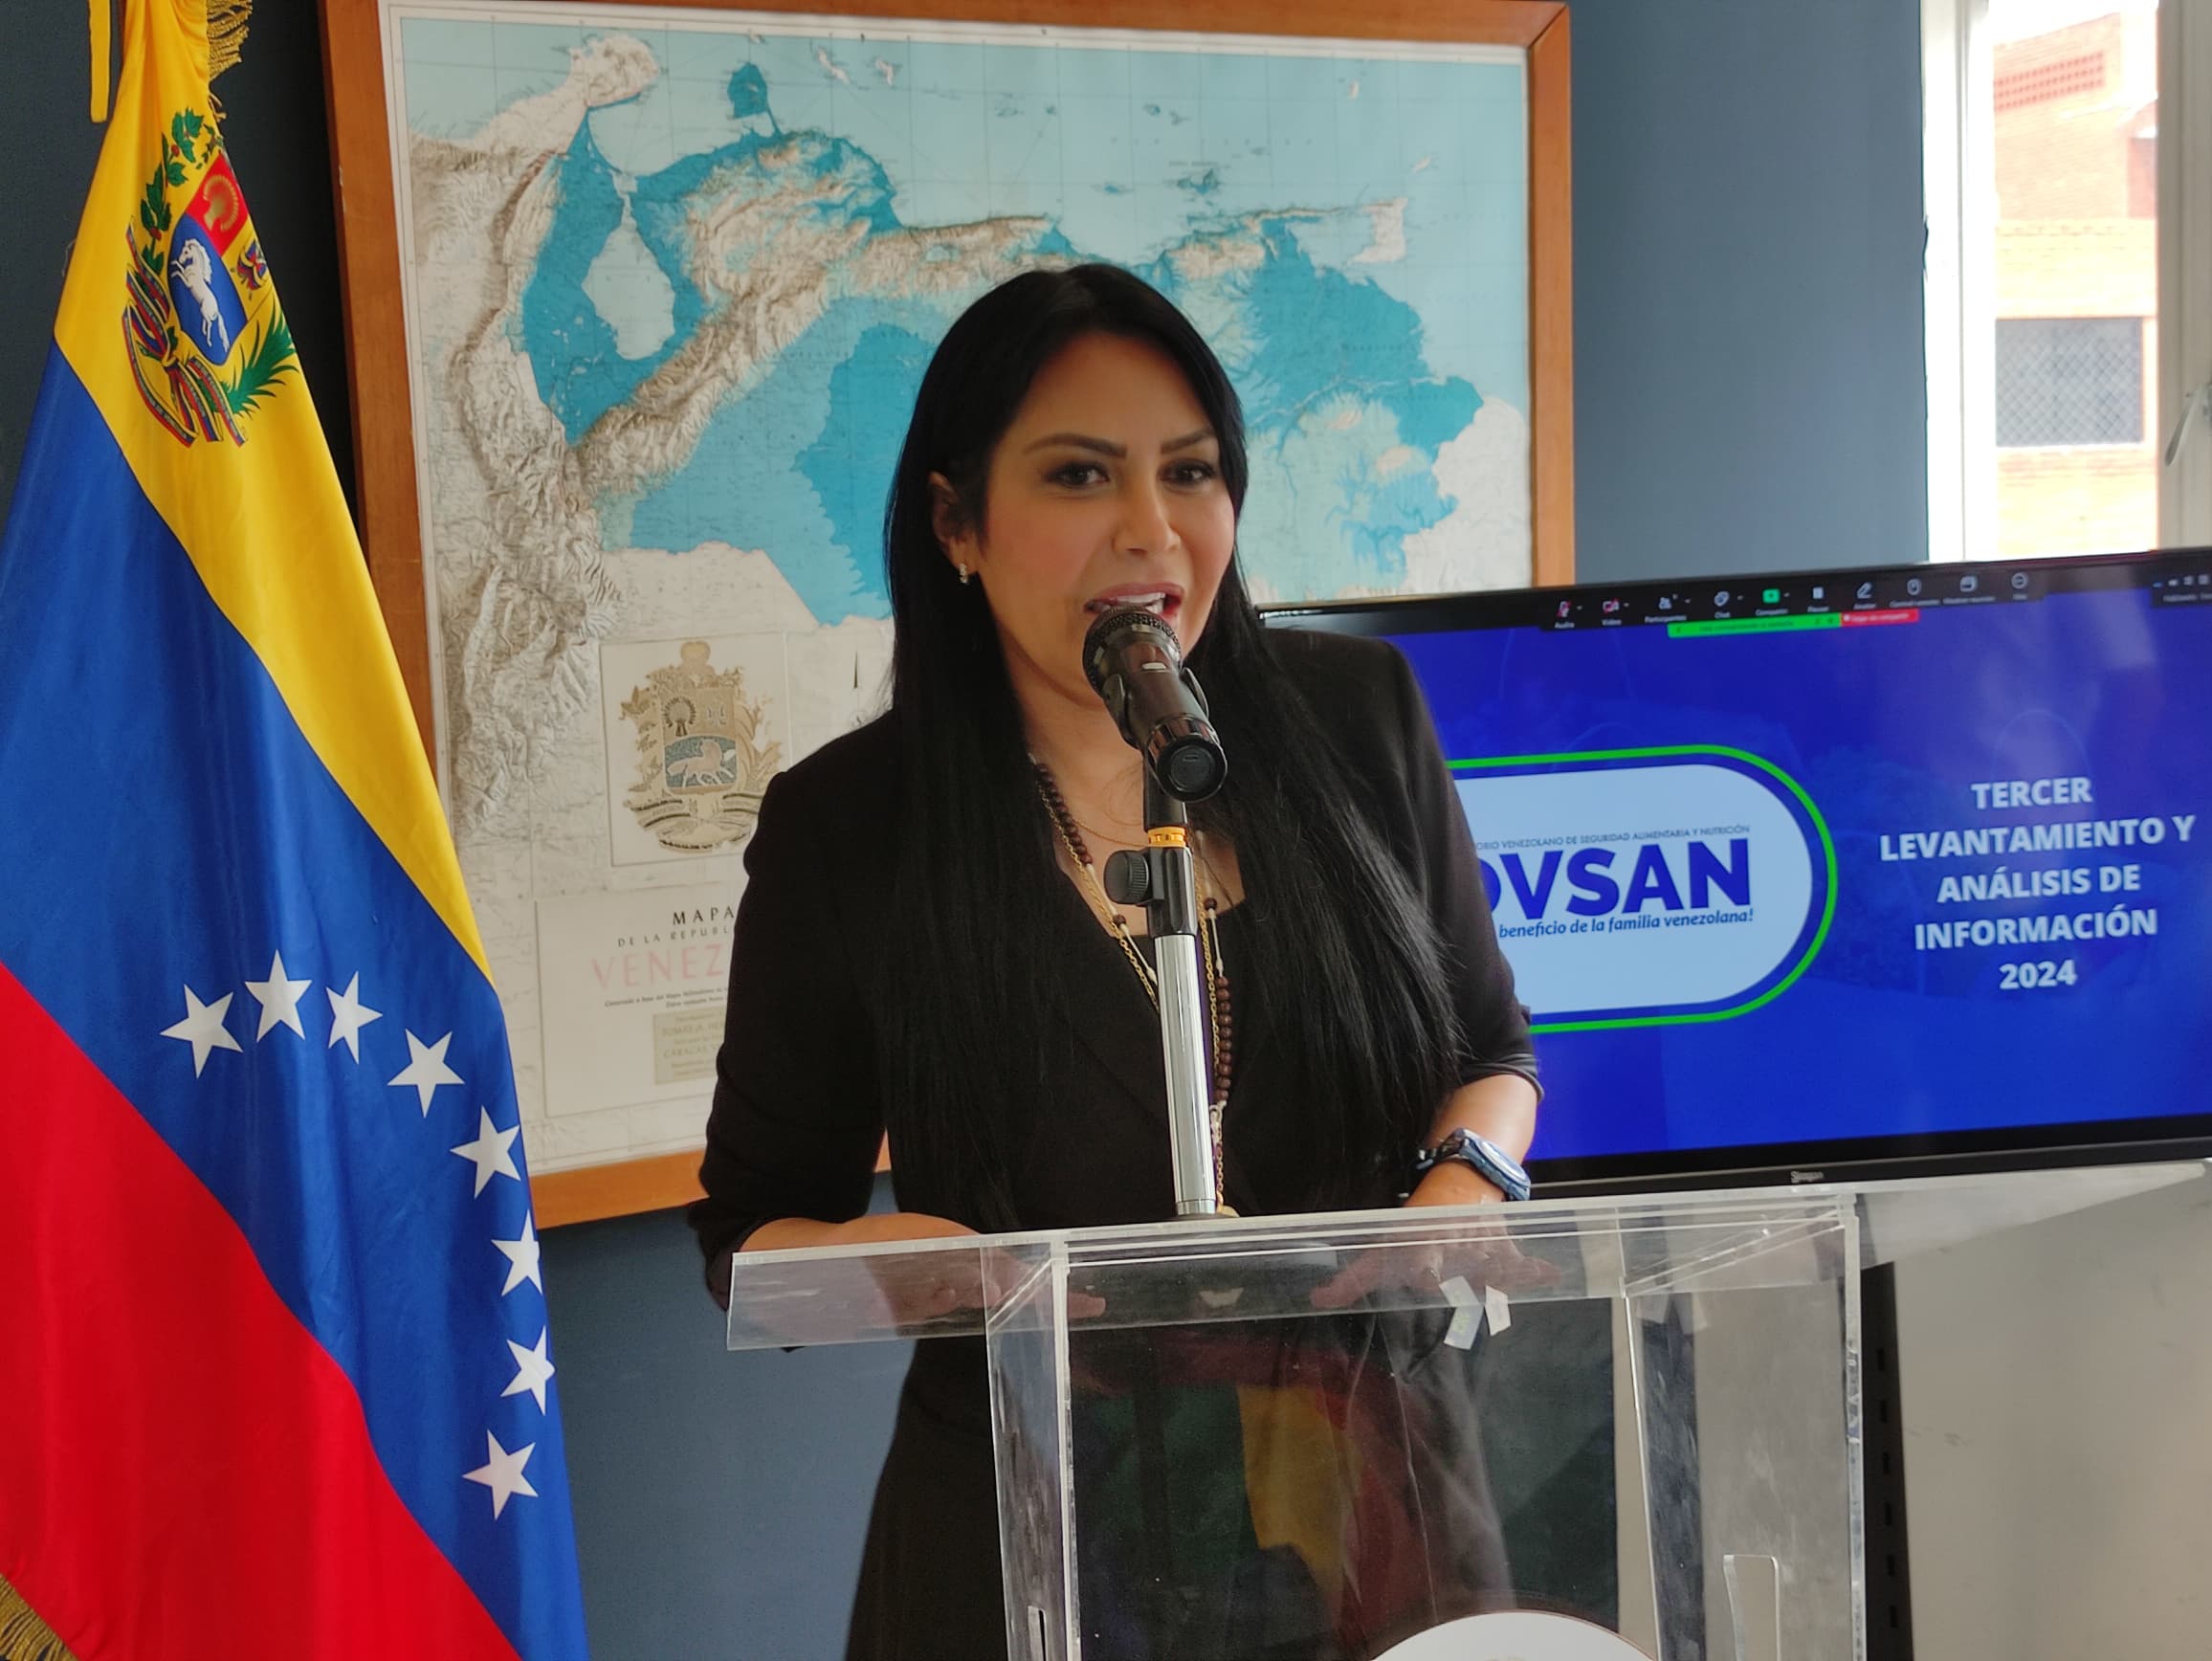 Cayó a 33 % la dependencia de las familias venezolanas a la bolsa Clap, según el Ovsan